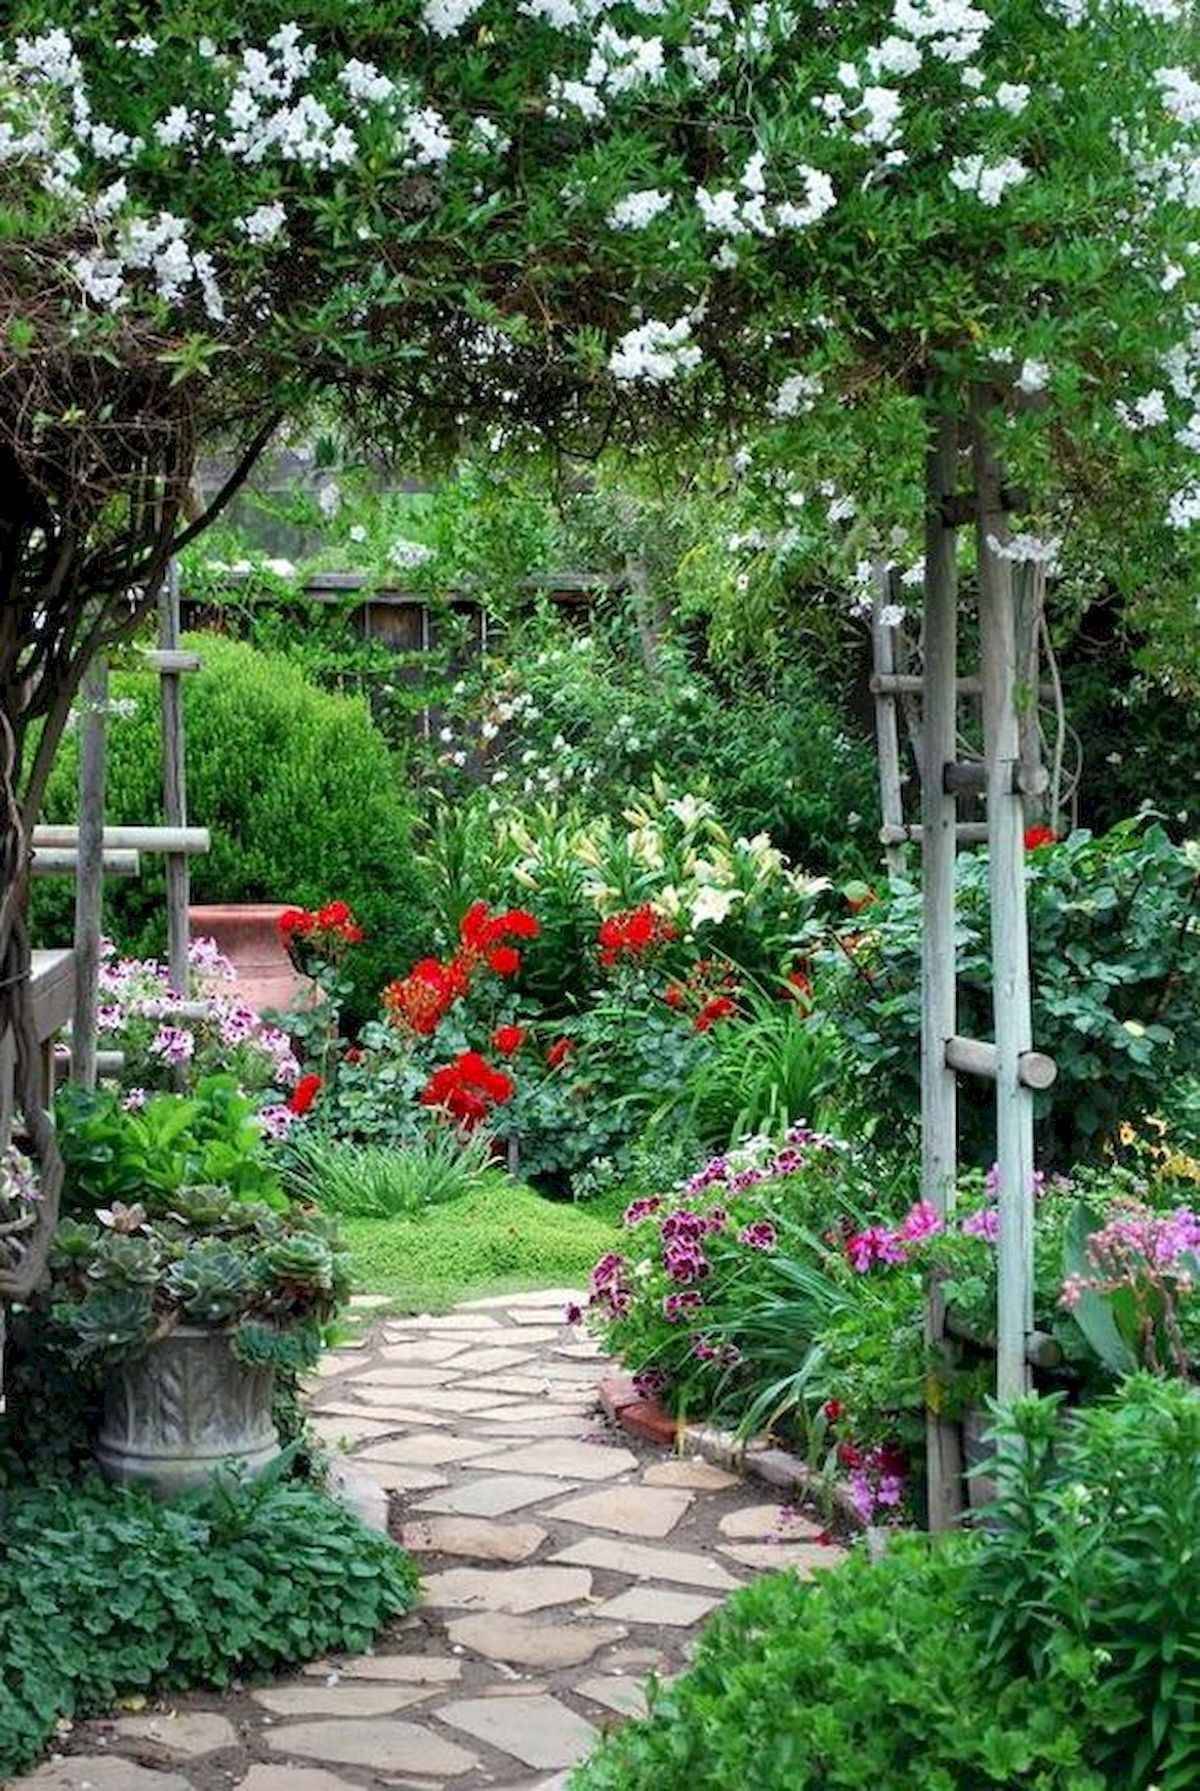 Italian Villa Gardens